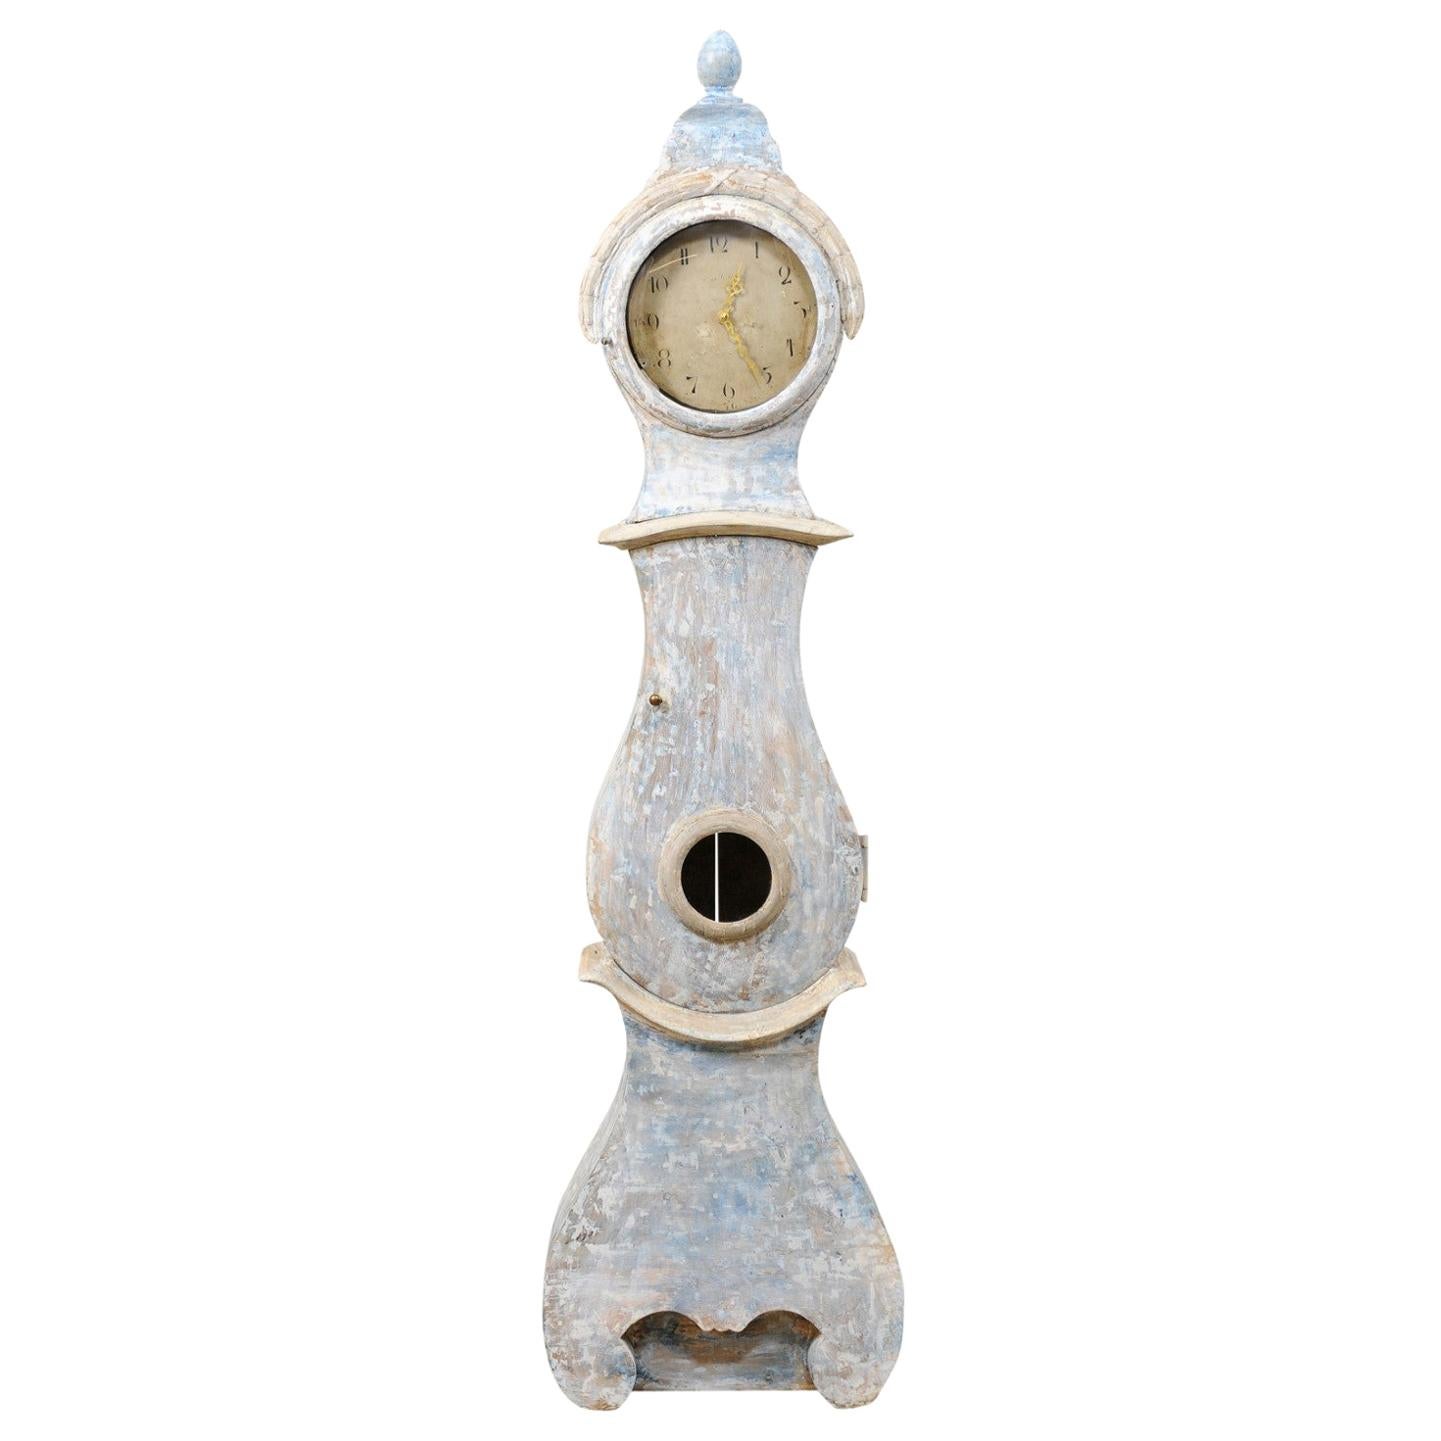 Horloge de sol suédoise du 19ème siècle en bois avec finition en bois découpé et mouvement à quartz neuf